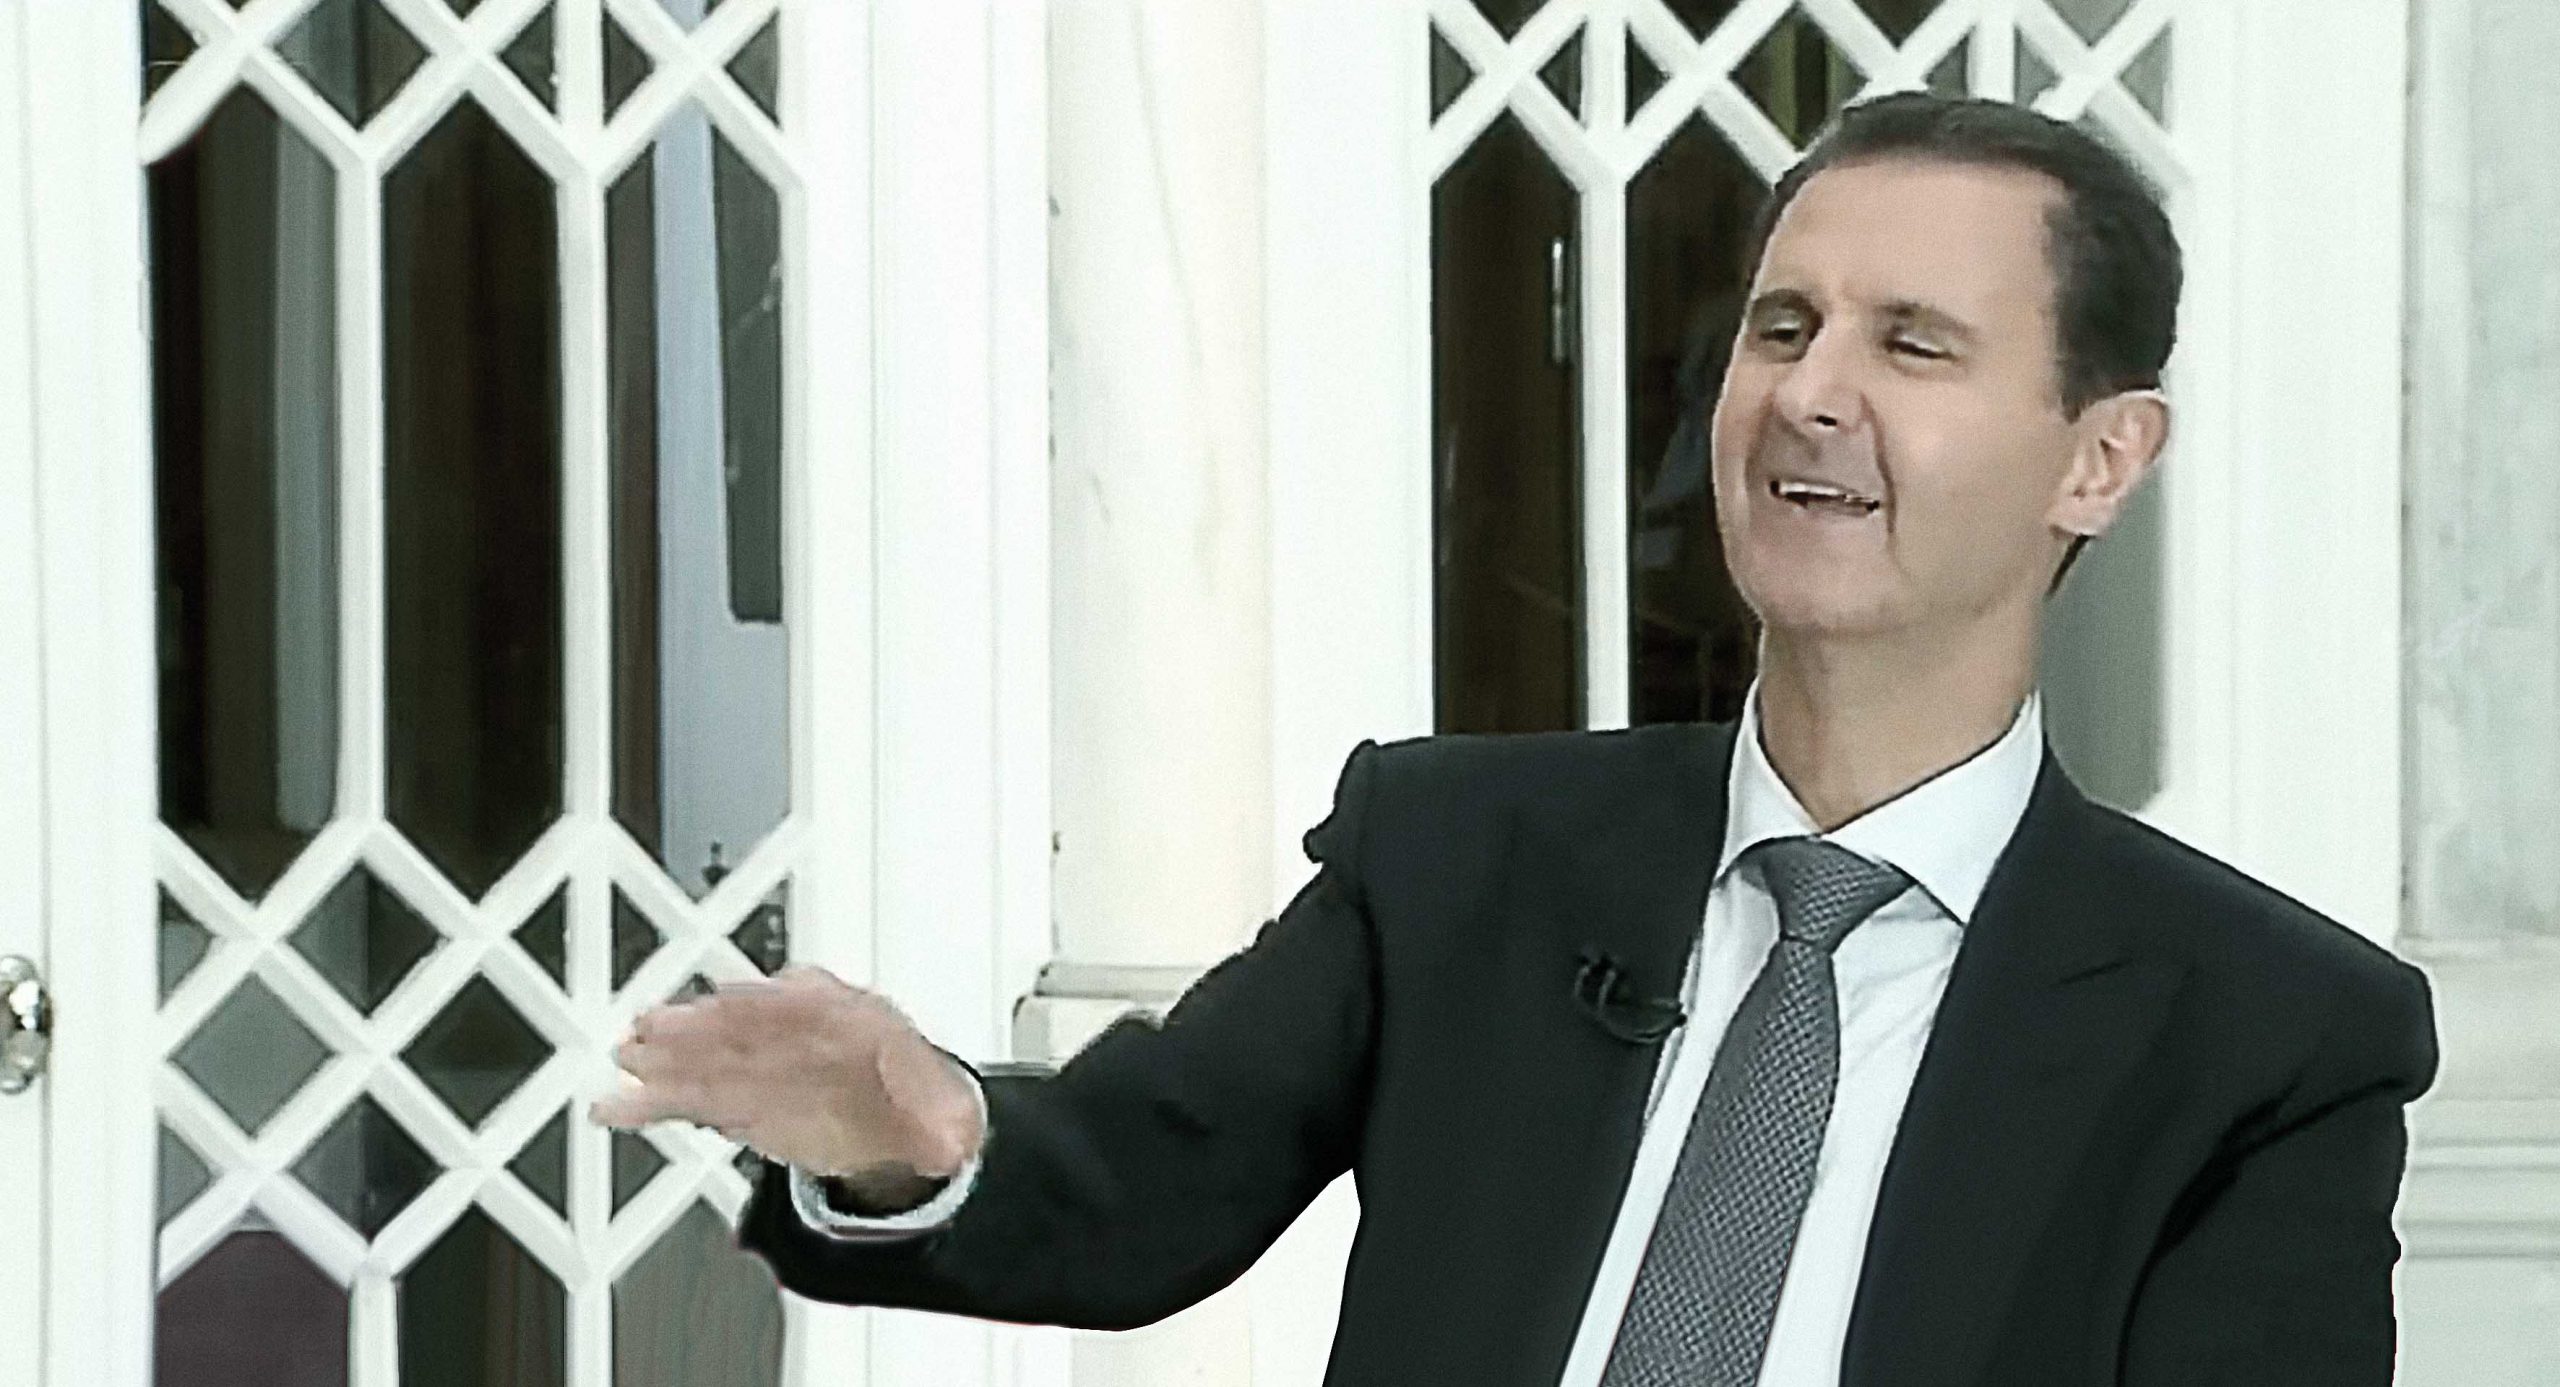 صورة الأسد يدعو لرفع العقوبات الاقتصادية عن بلاده لأنه باقٍ بها وبدونها ولن تحقِّق شيئاً سوى تجويع الشعب